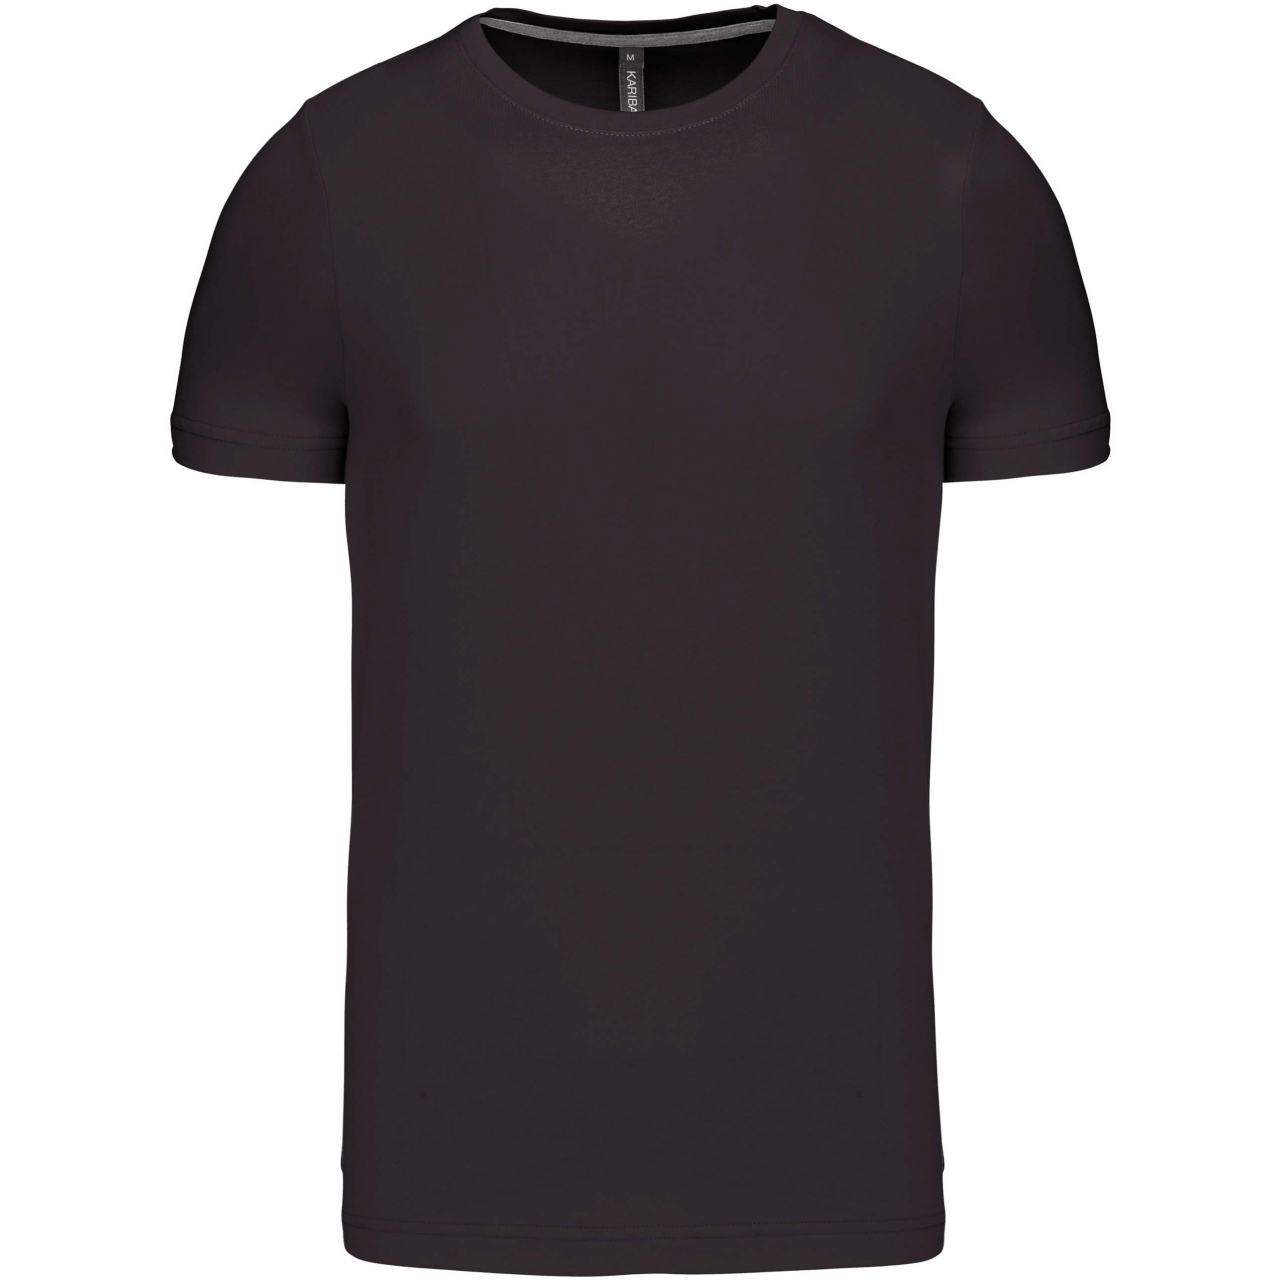 Pánské tričko Kariban krátký rukáv - tmavě šedé, 3XL